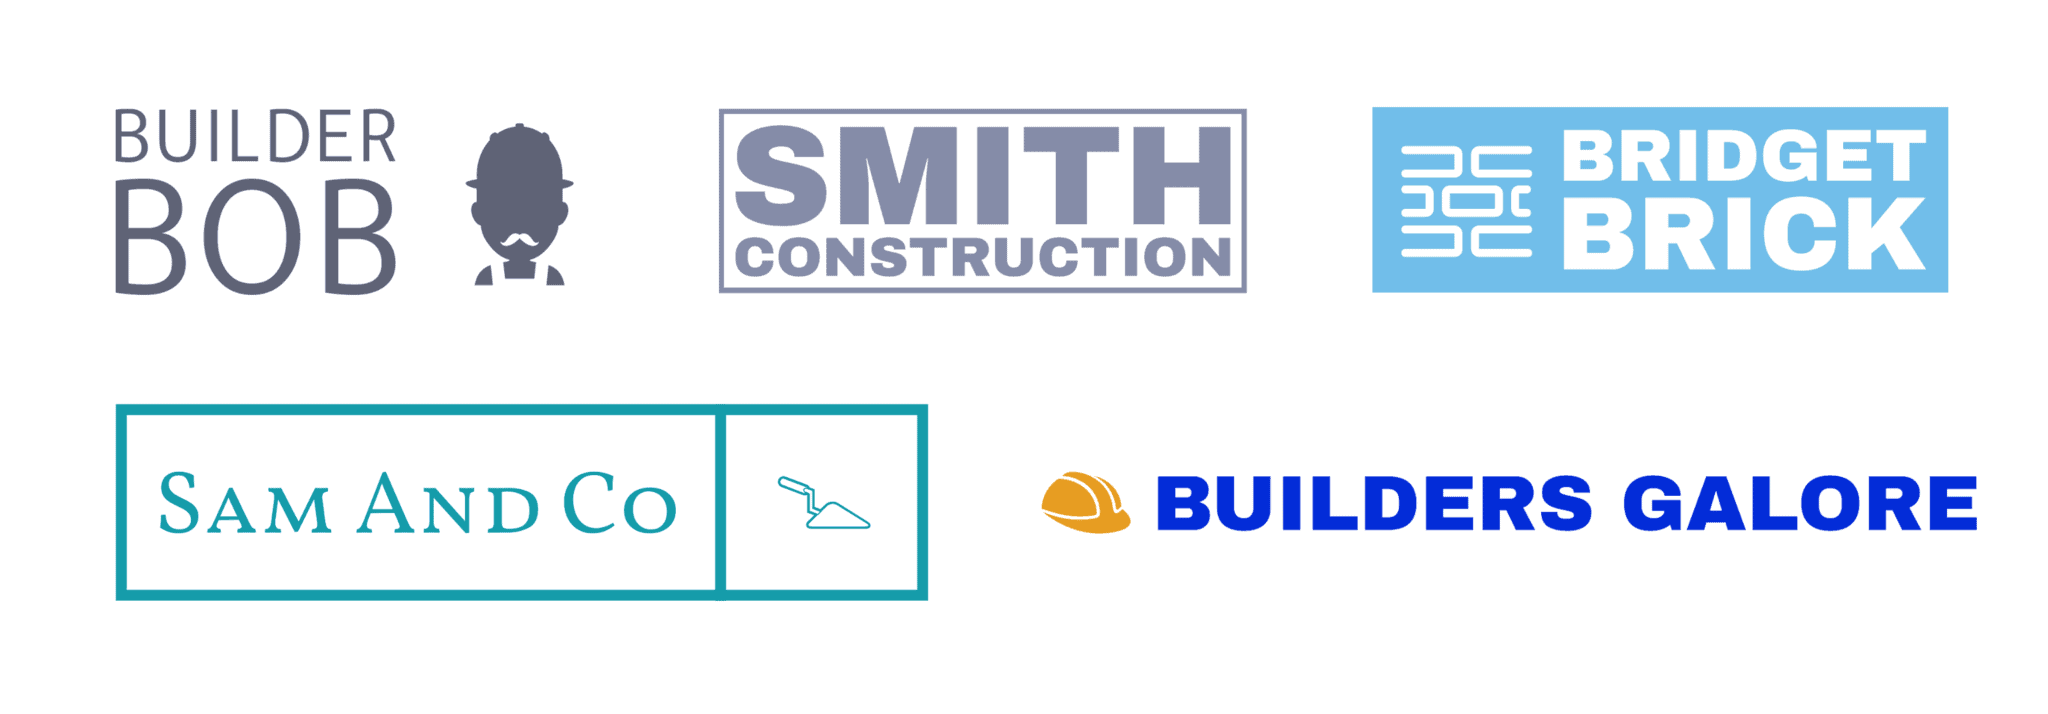 Ejemplos de logo de empresas constructoras 